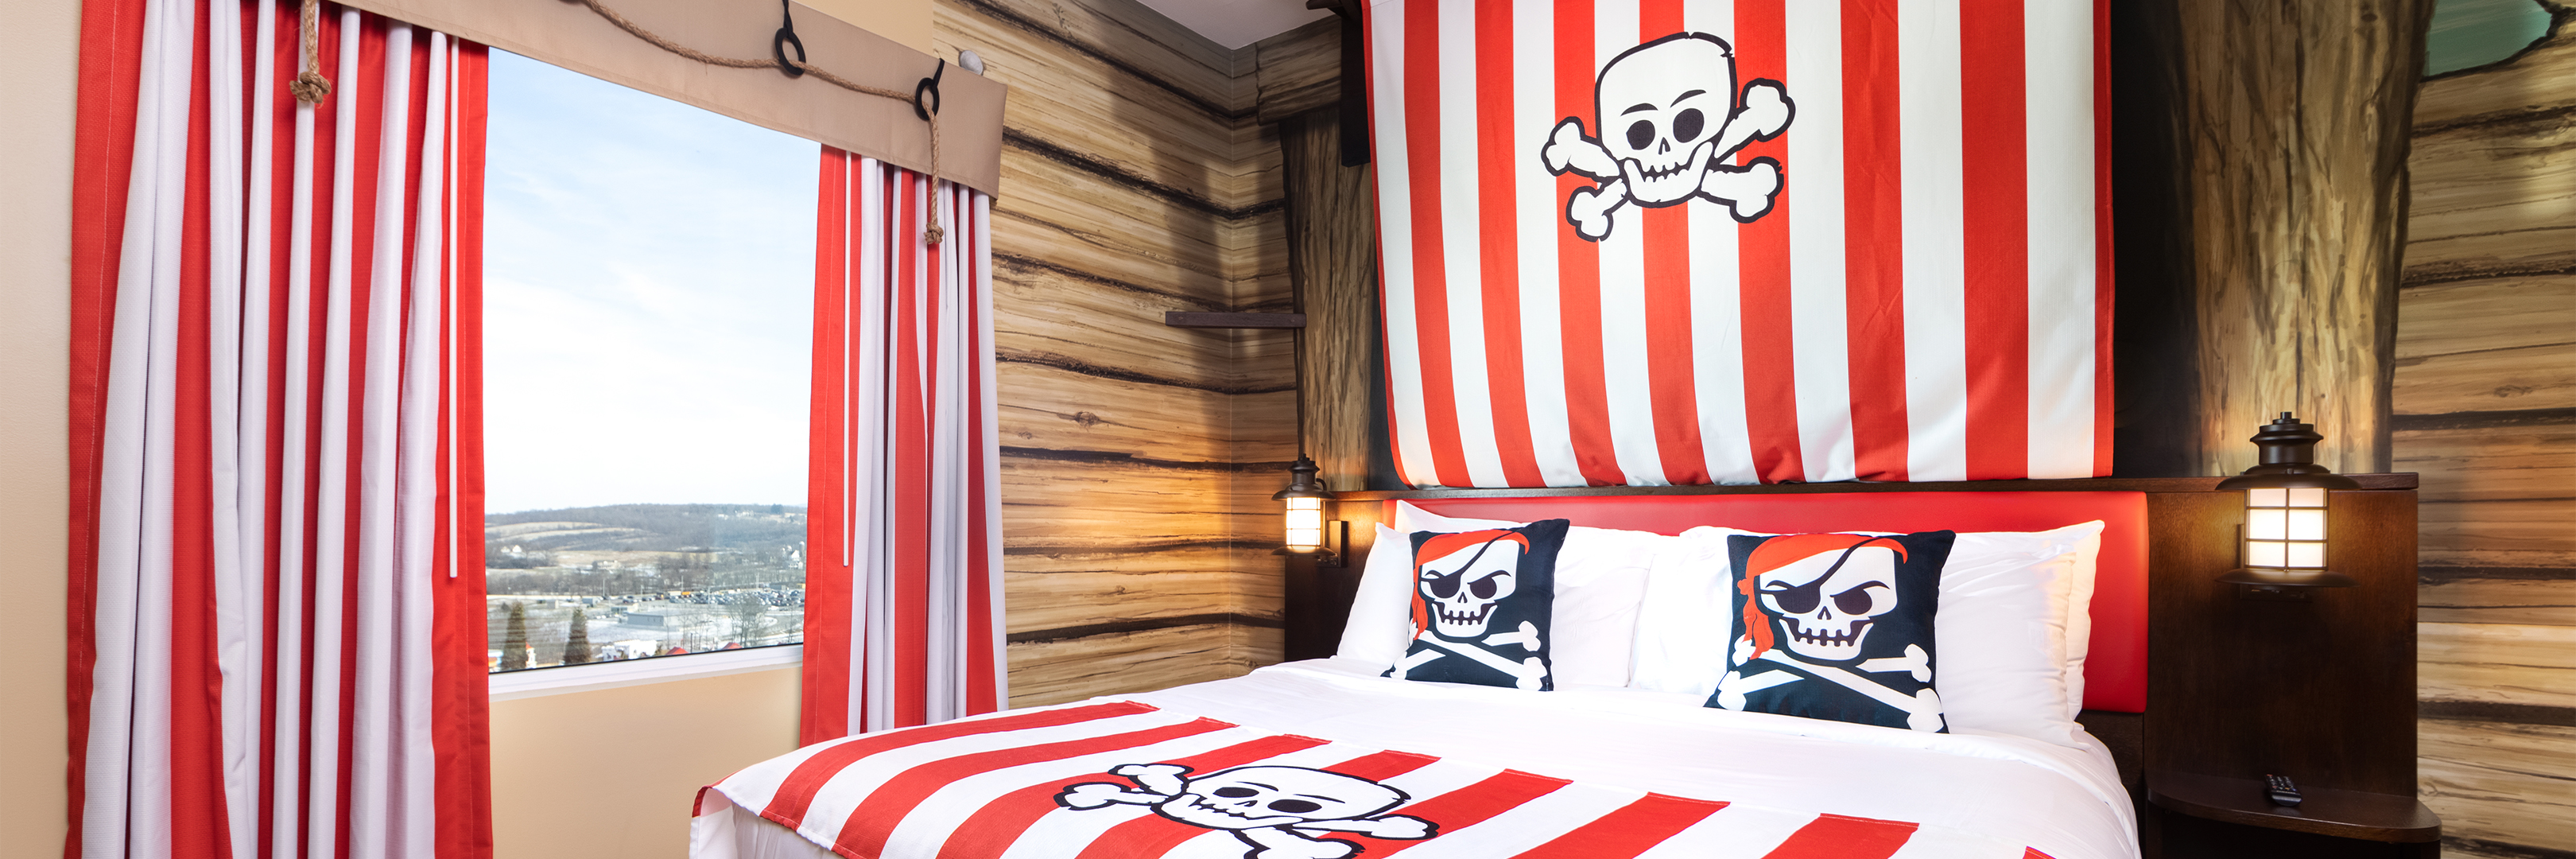 LEGOLAND Hotel Pirates Room